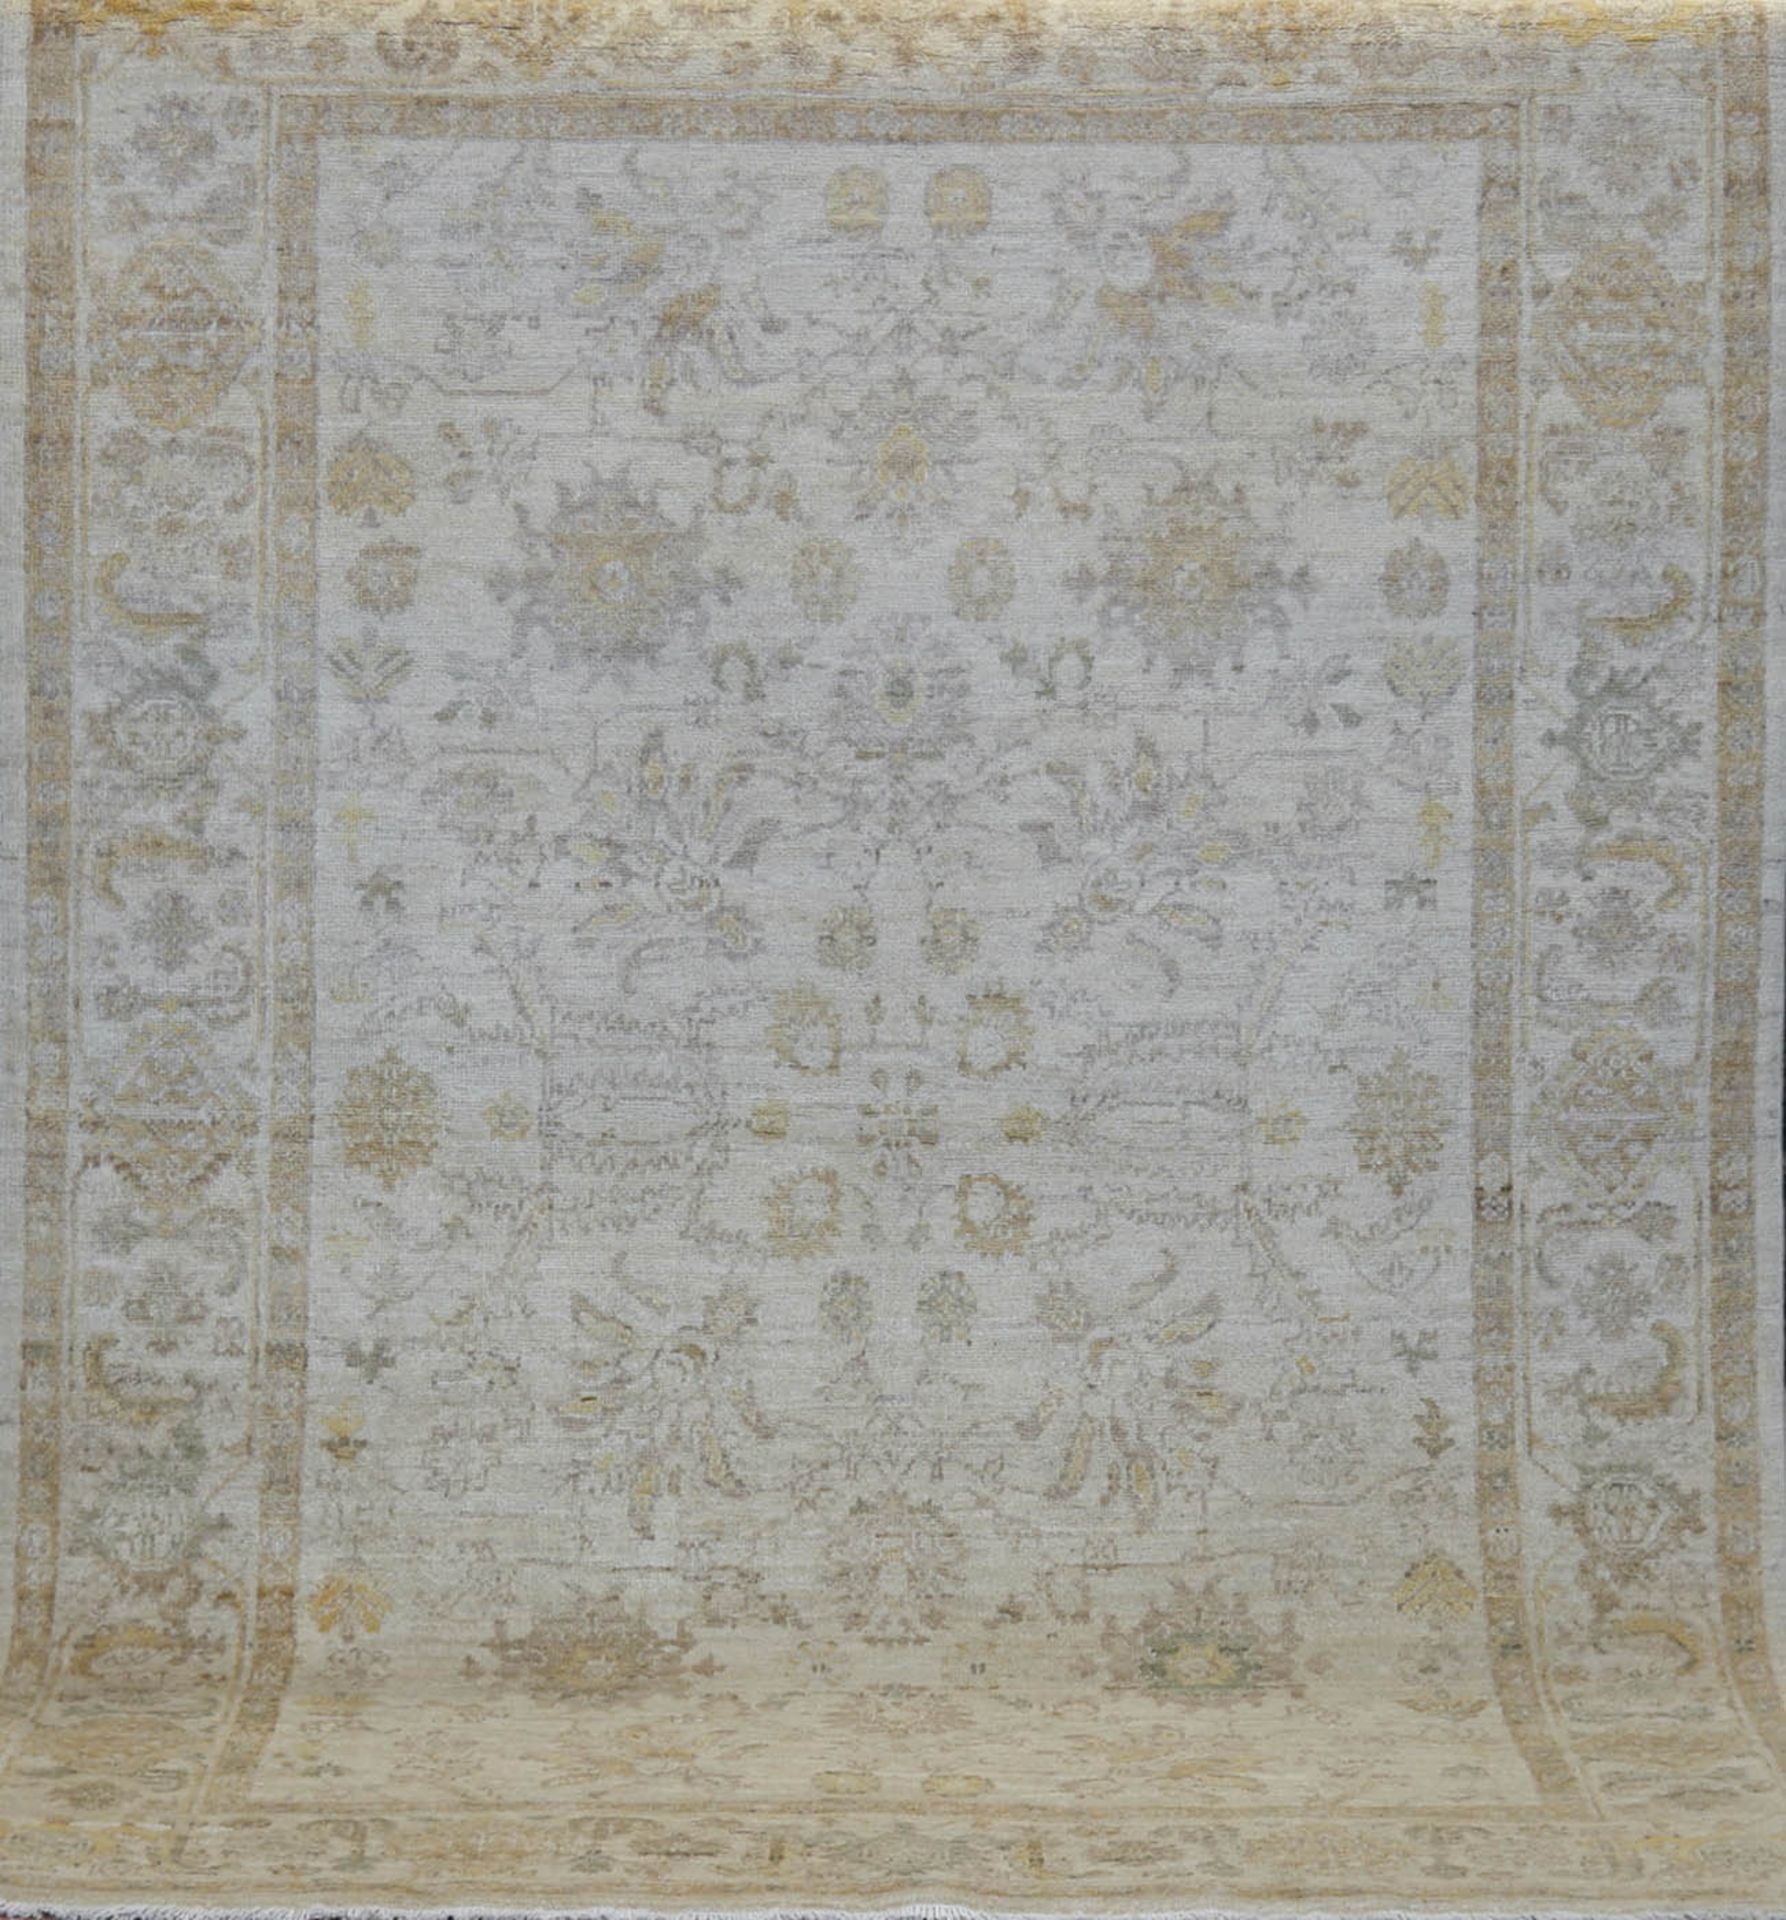 Teppich, Pakistan, Wolle, hellgrundig mit floralem Muster, Fransen gekürzt, 210x147 cm